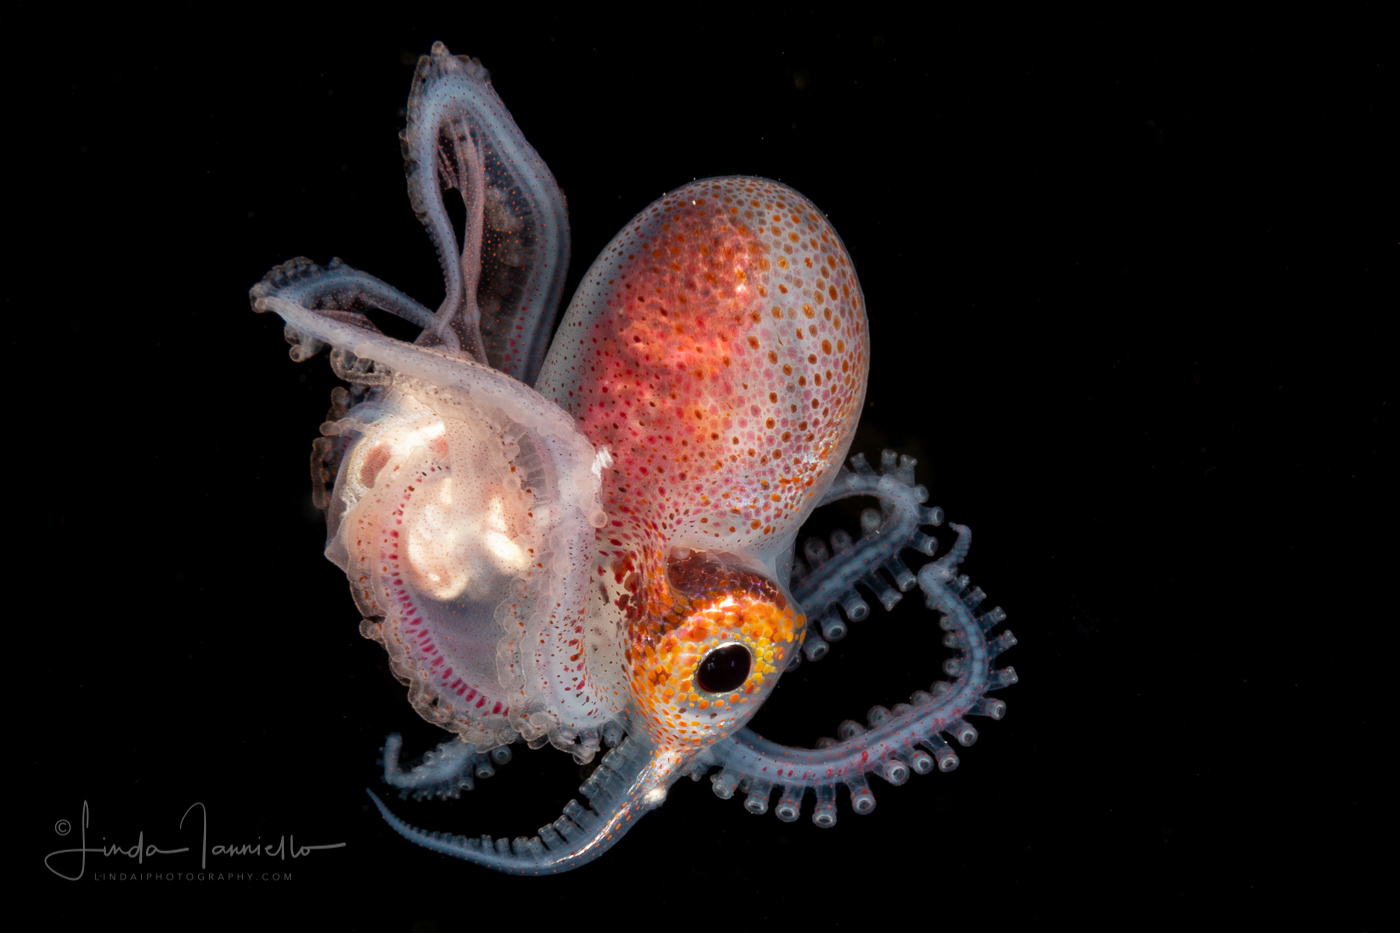 Female Blanket Octopus - Tremoctopus violaceus